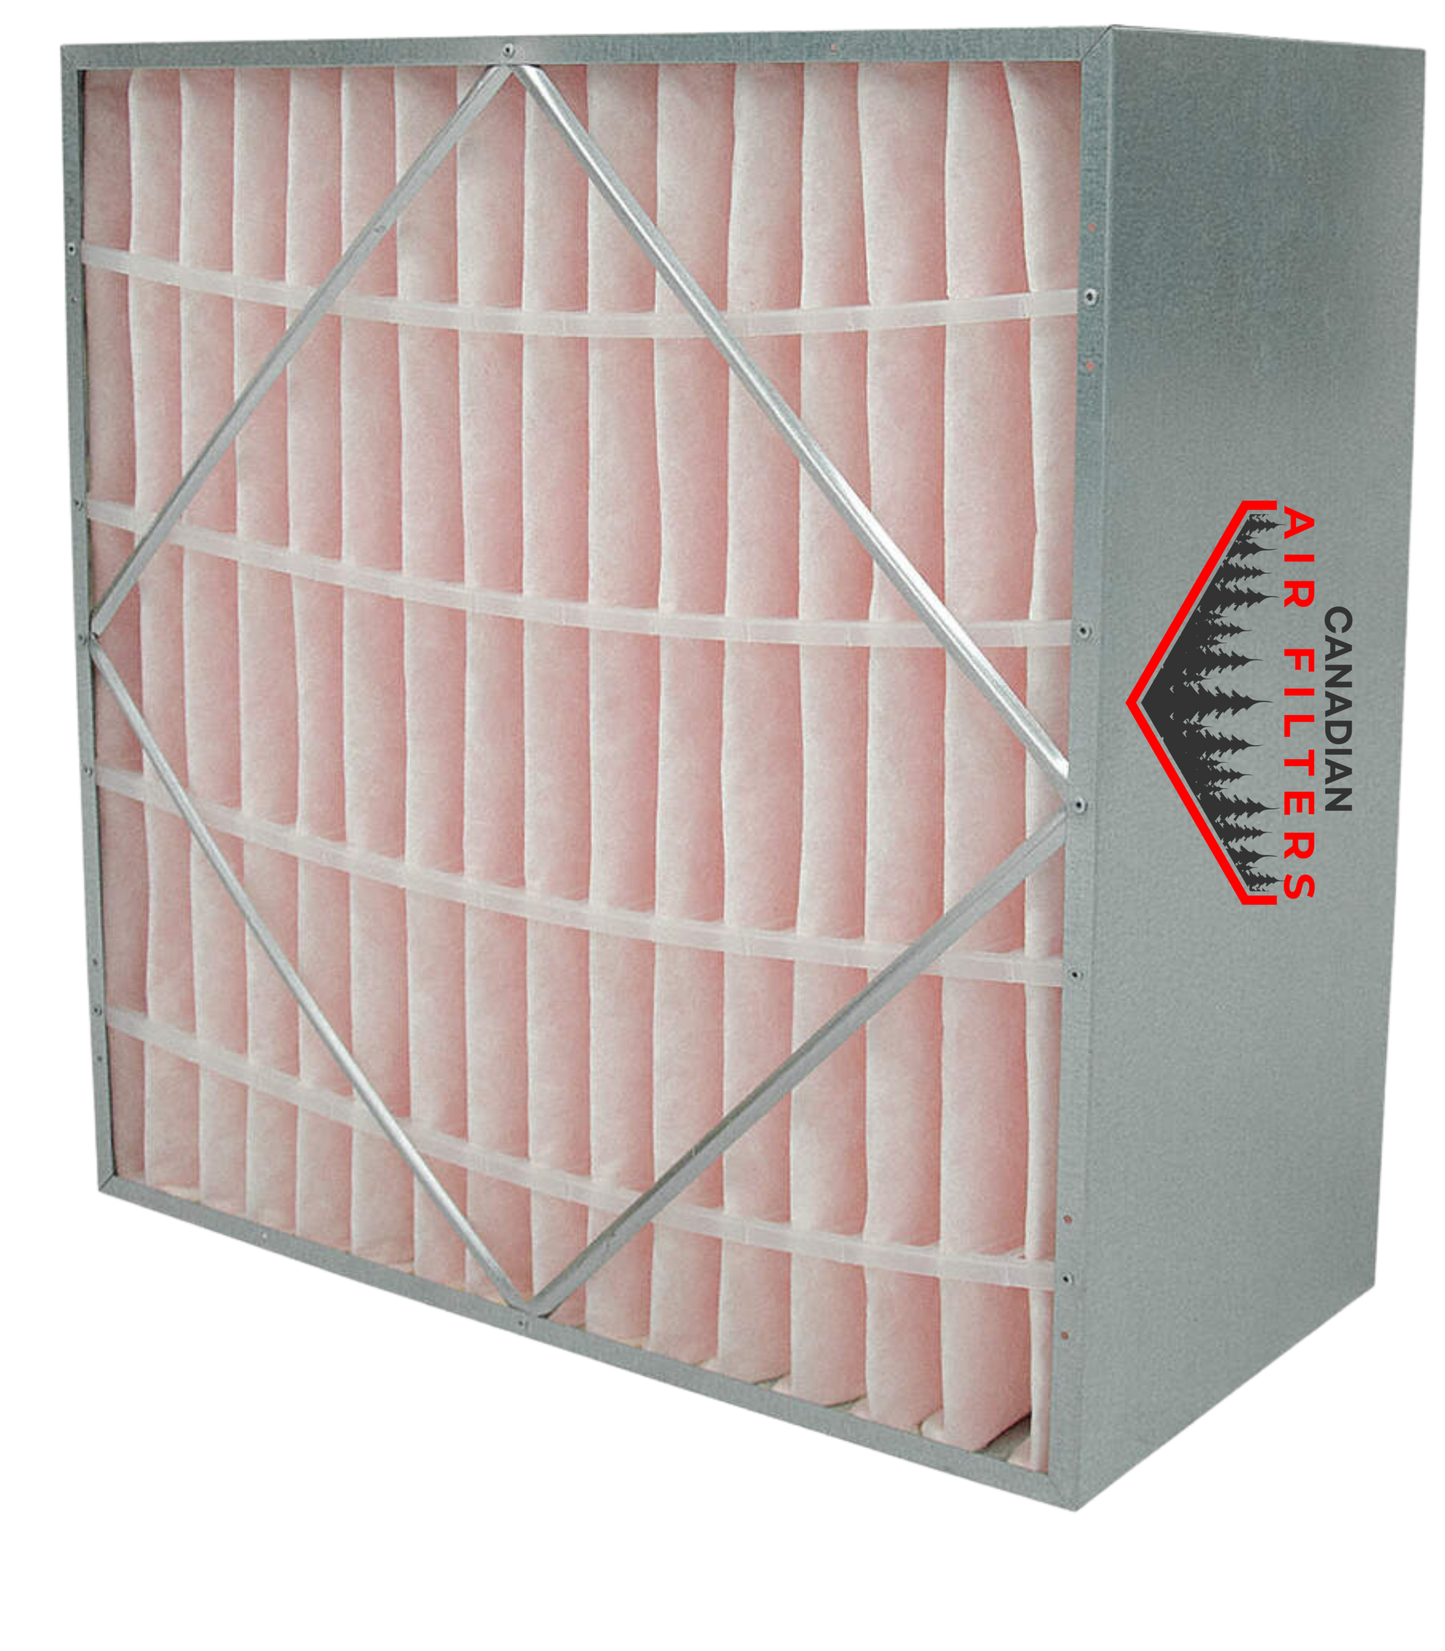 20 x 20 x 12 - Rigid Cell Air Filters Box Style - Merv 14 (Each)